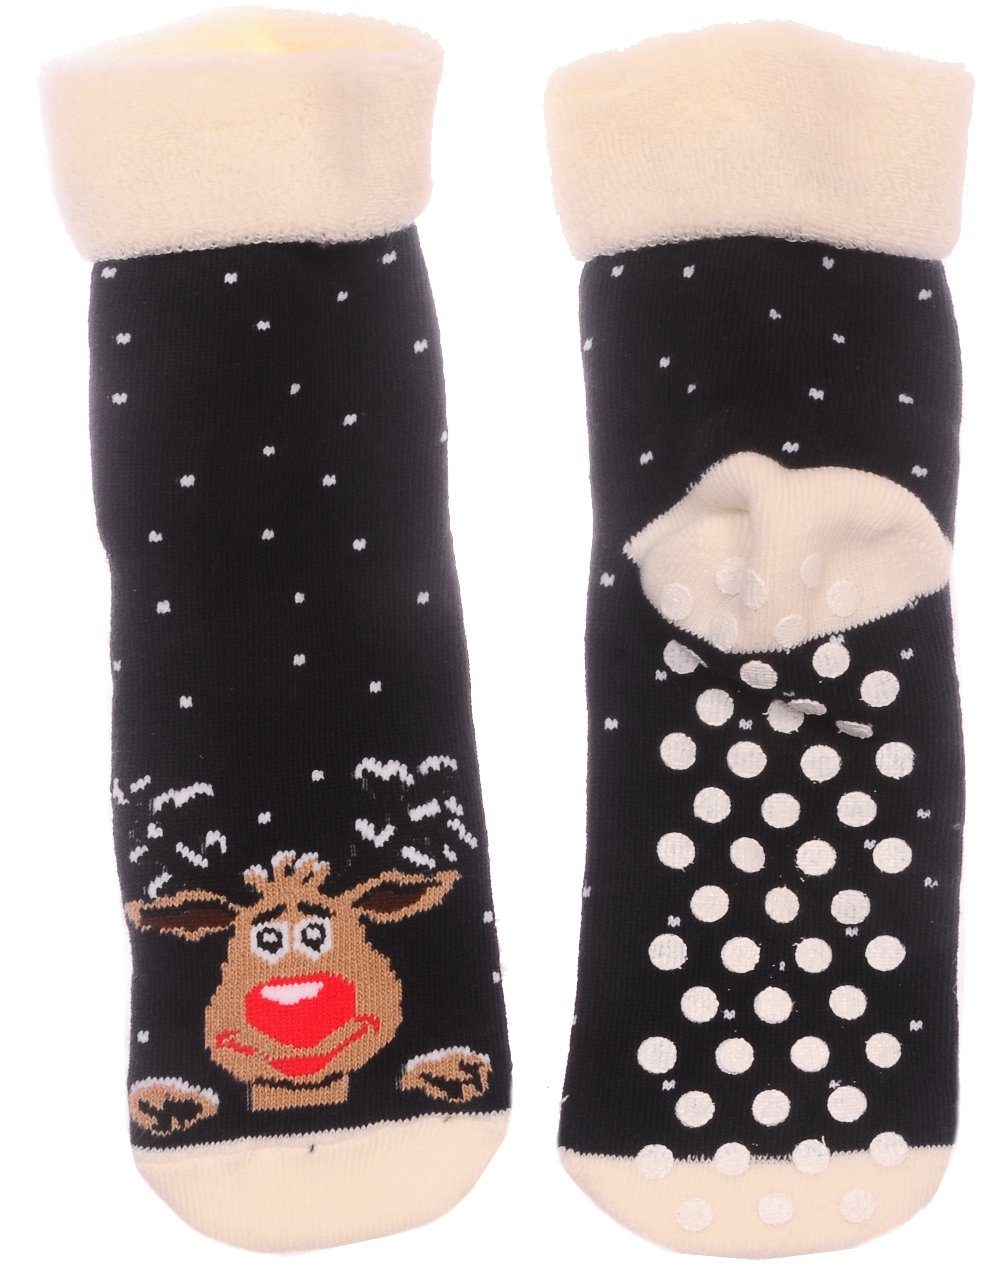 Martinex Thermosocken Socken Weihnachten Weihnachtssocken Antirutschsocken Strümpfe 35 36 38 für Jugendliche und Erwachsene